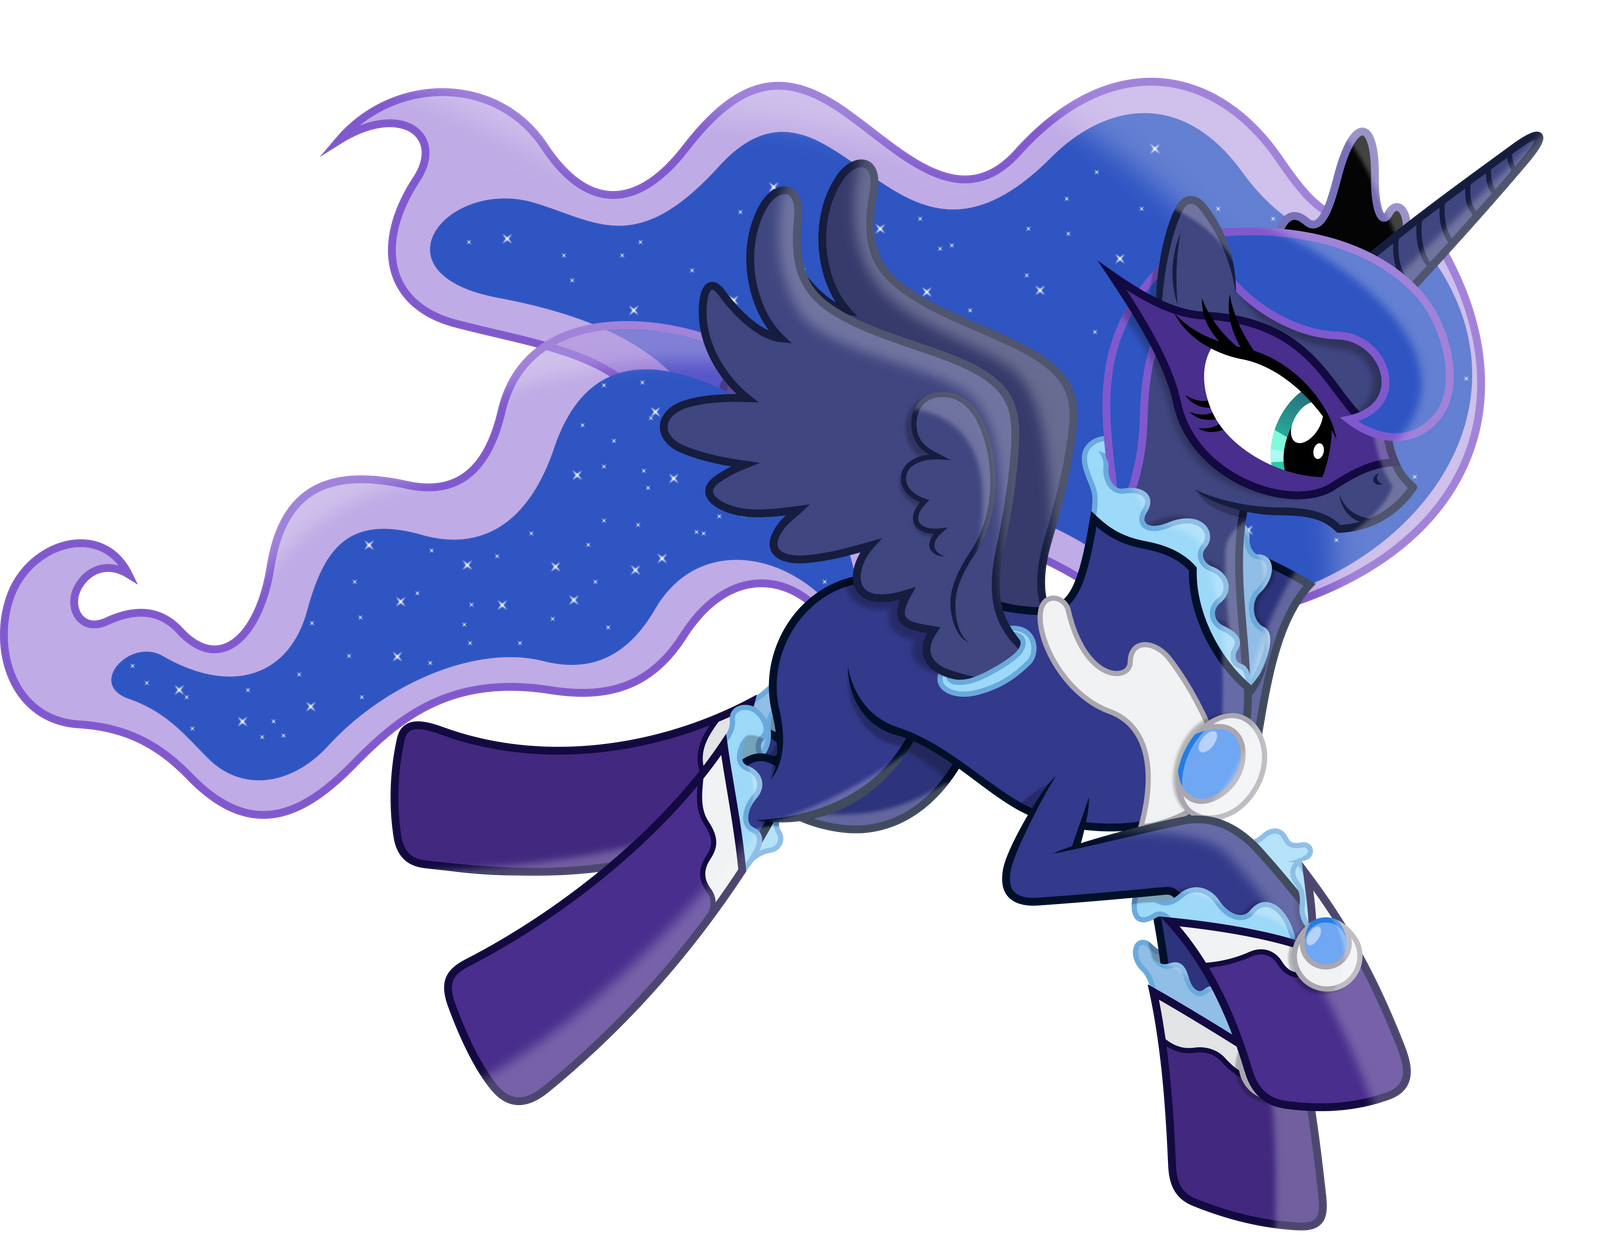 Princess Luna as a Power Pony